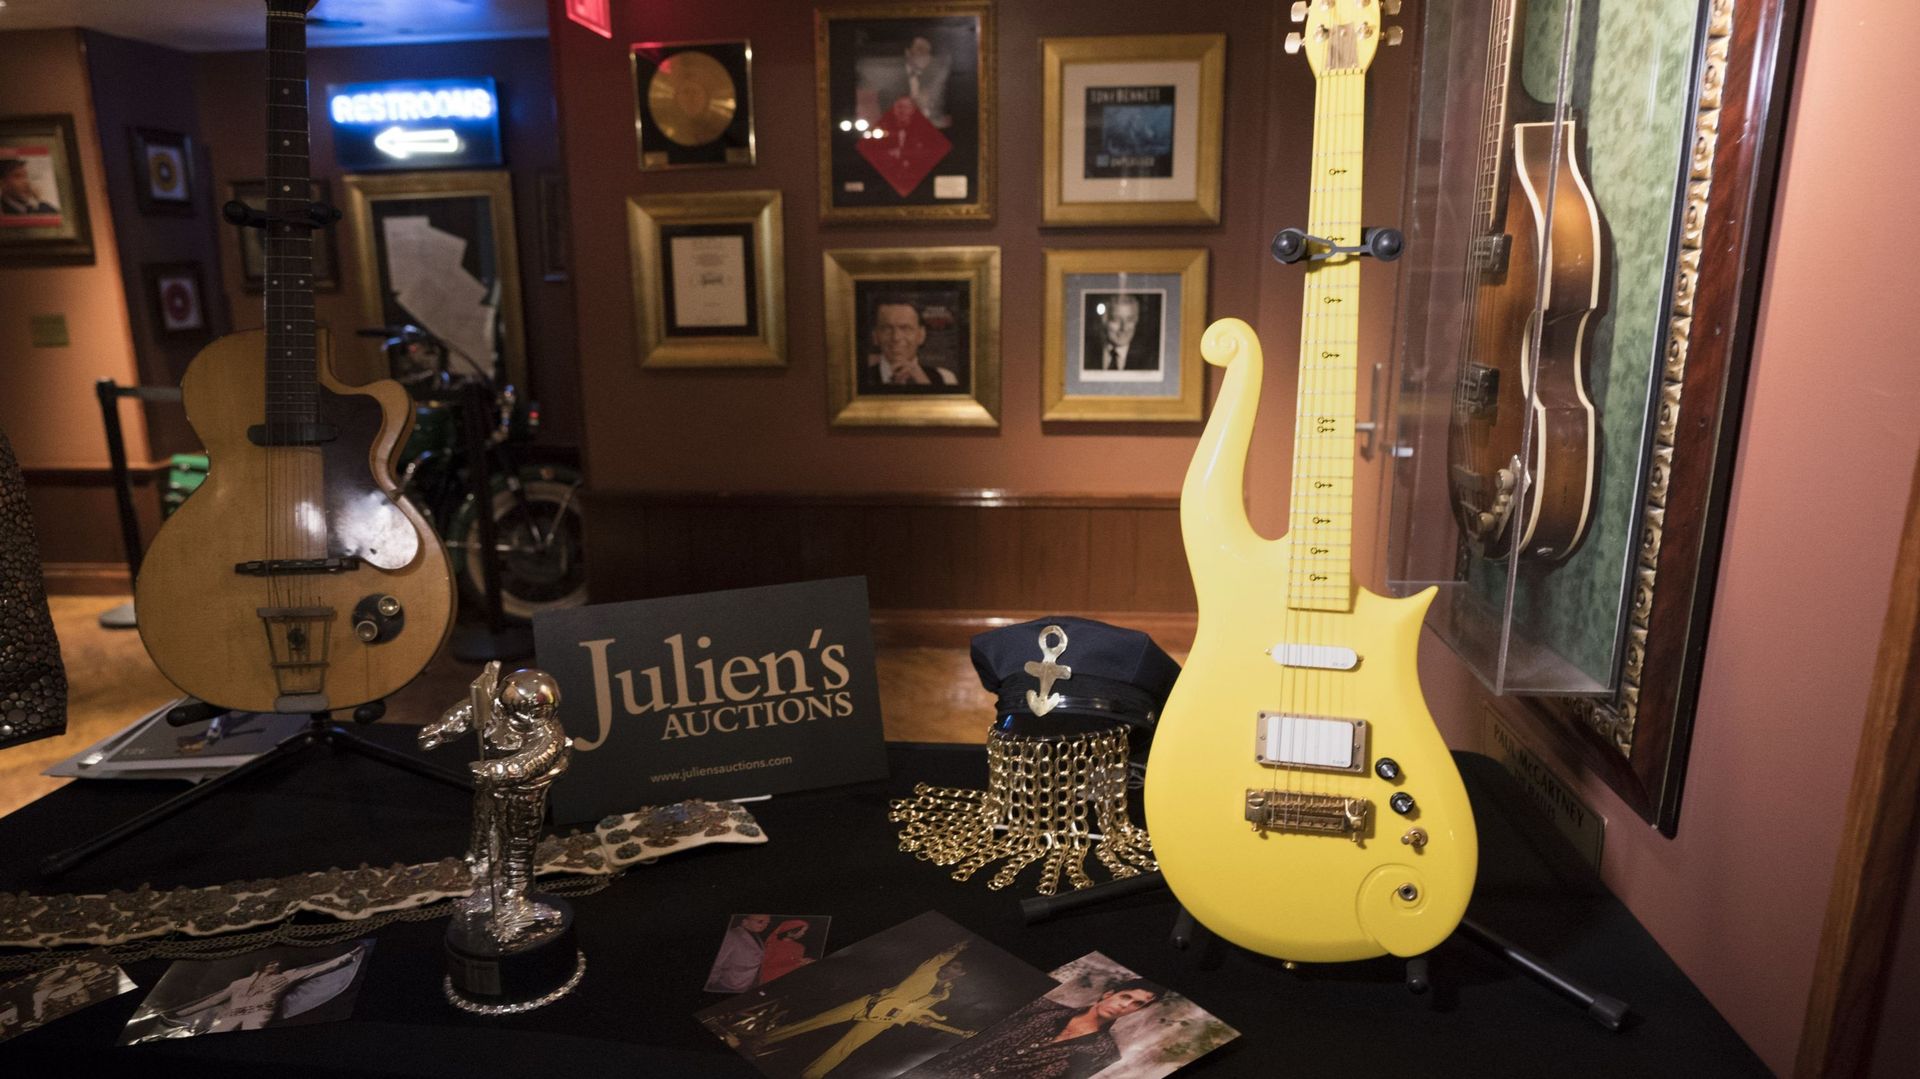 Ventes d'objets de Prince: une guitare jaune part pour 225.000 dollars